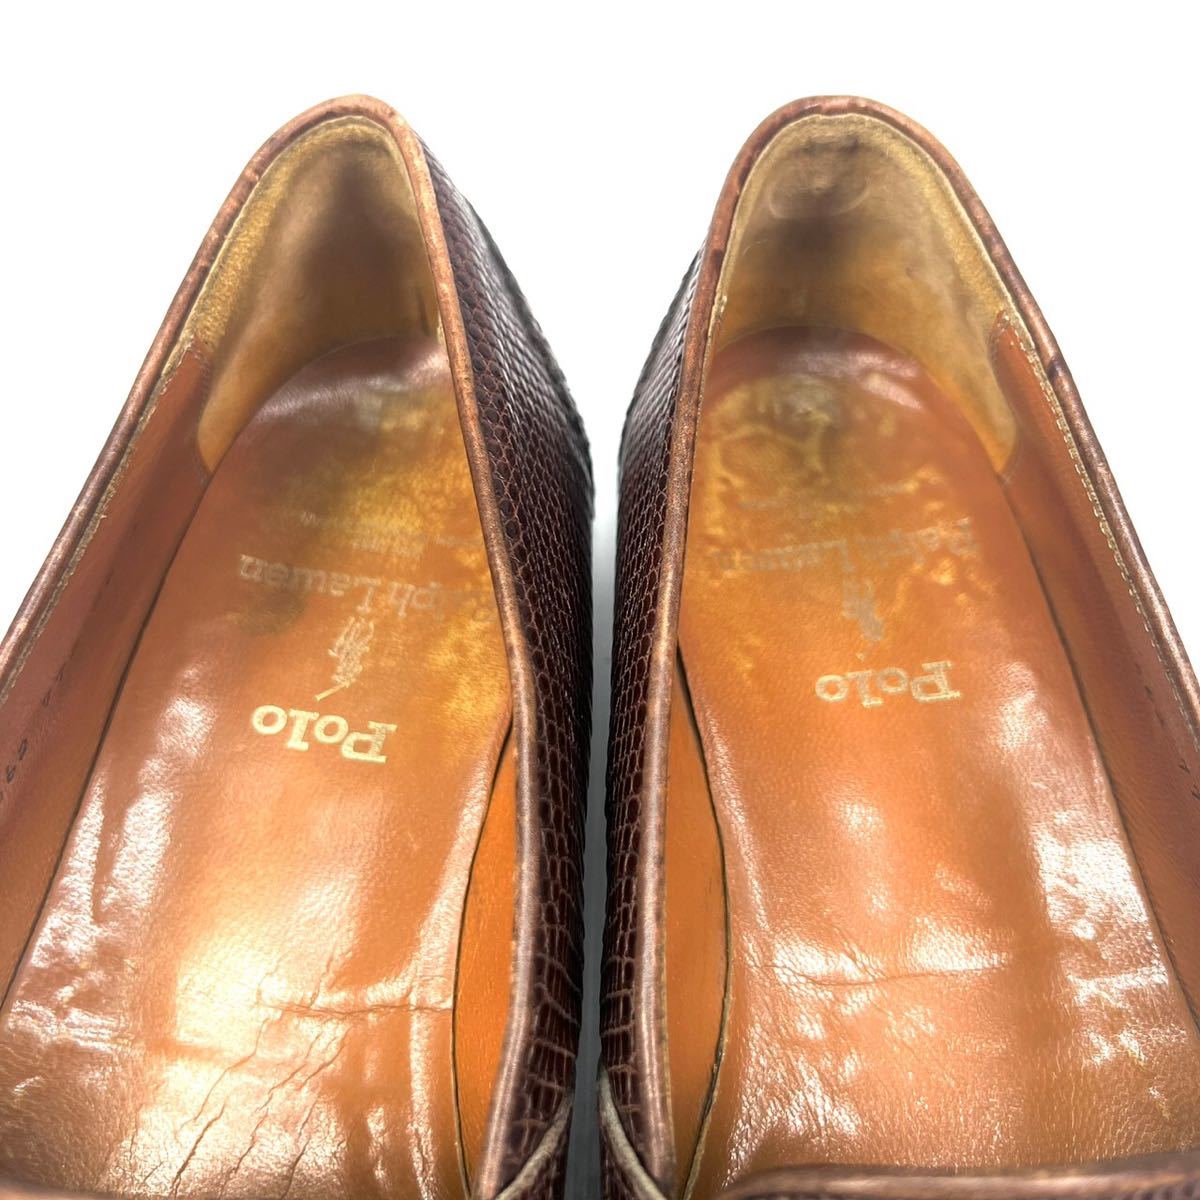 ポロラルフローレン ローファー 革靴 リザードレザー ブラウン 24cm